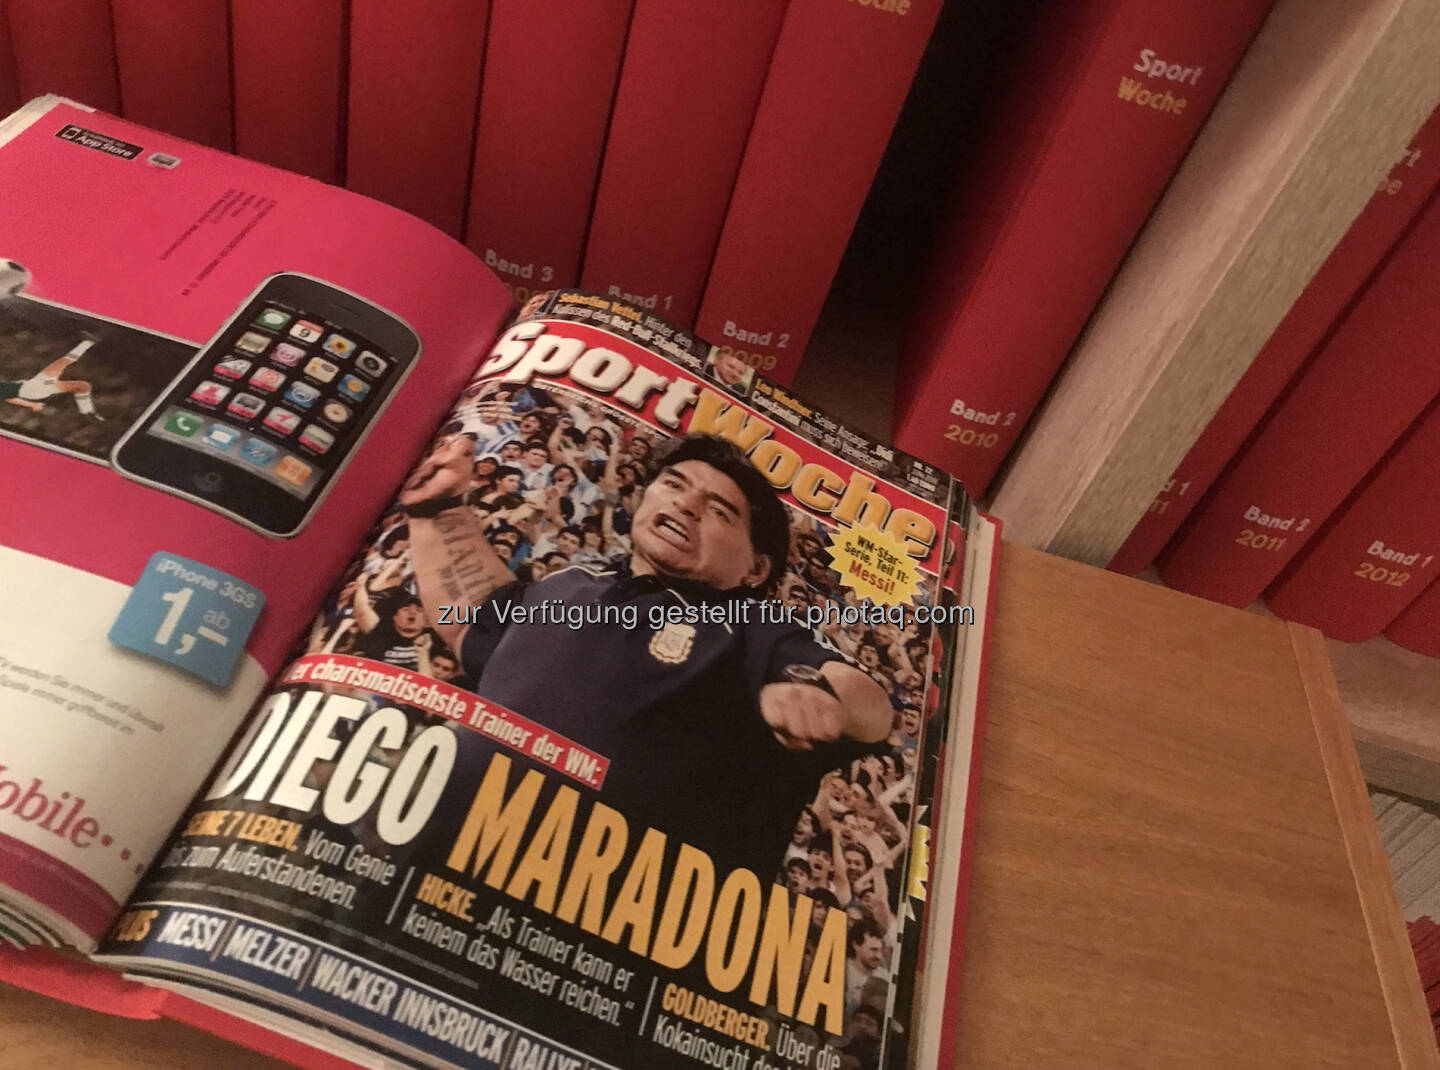 Diego Maradona in der Sport Woche